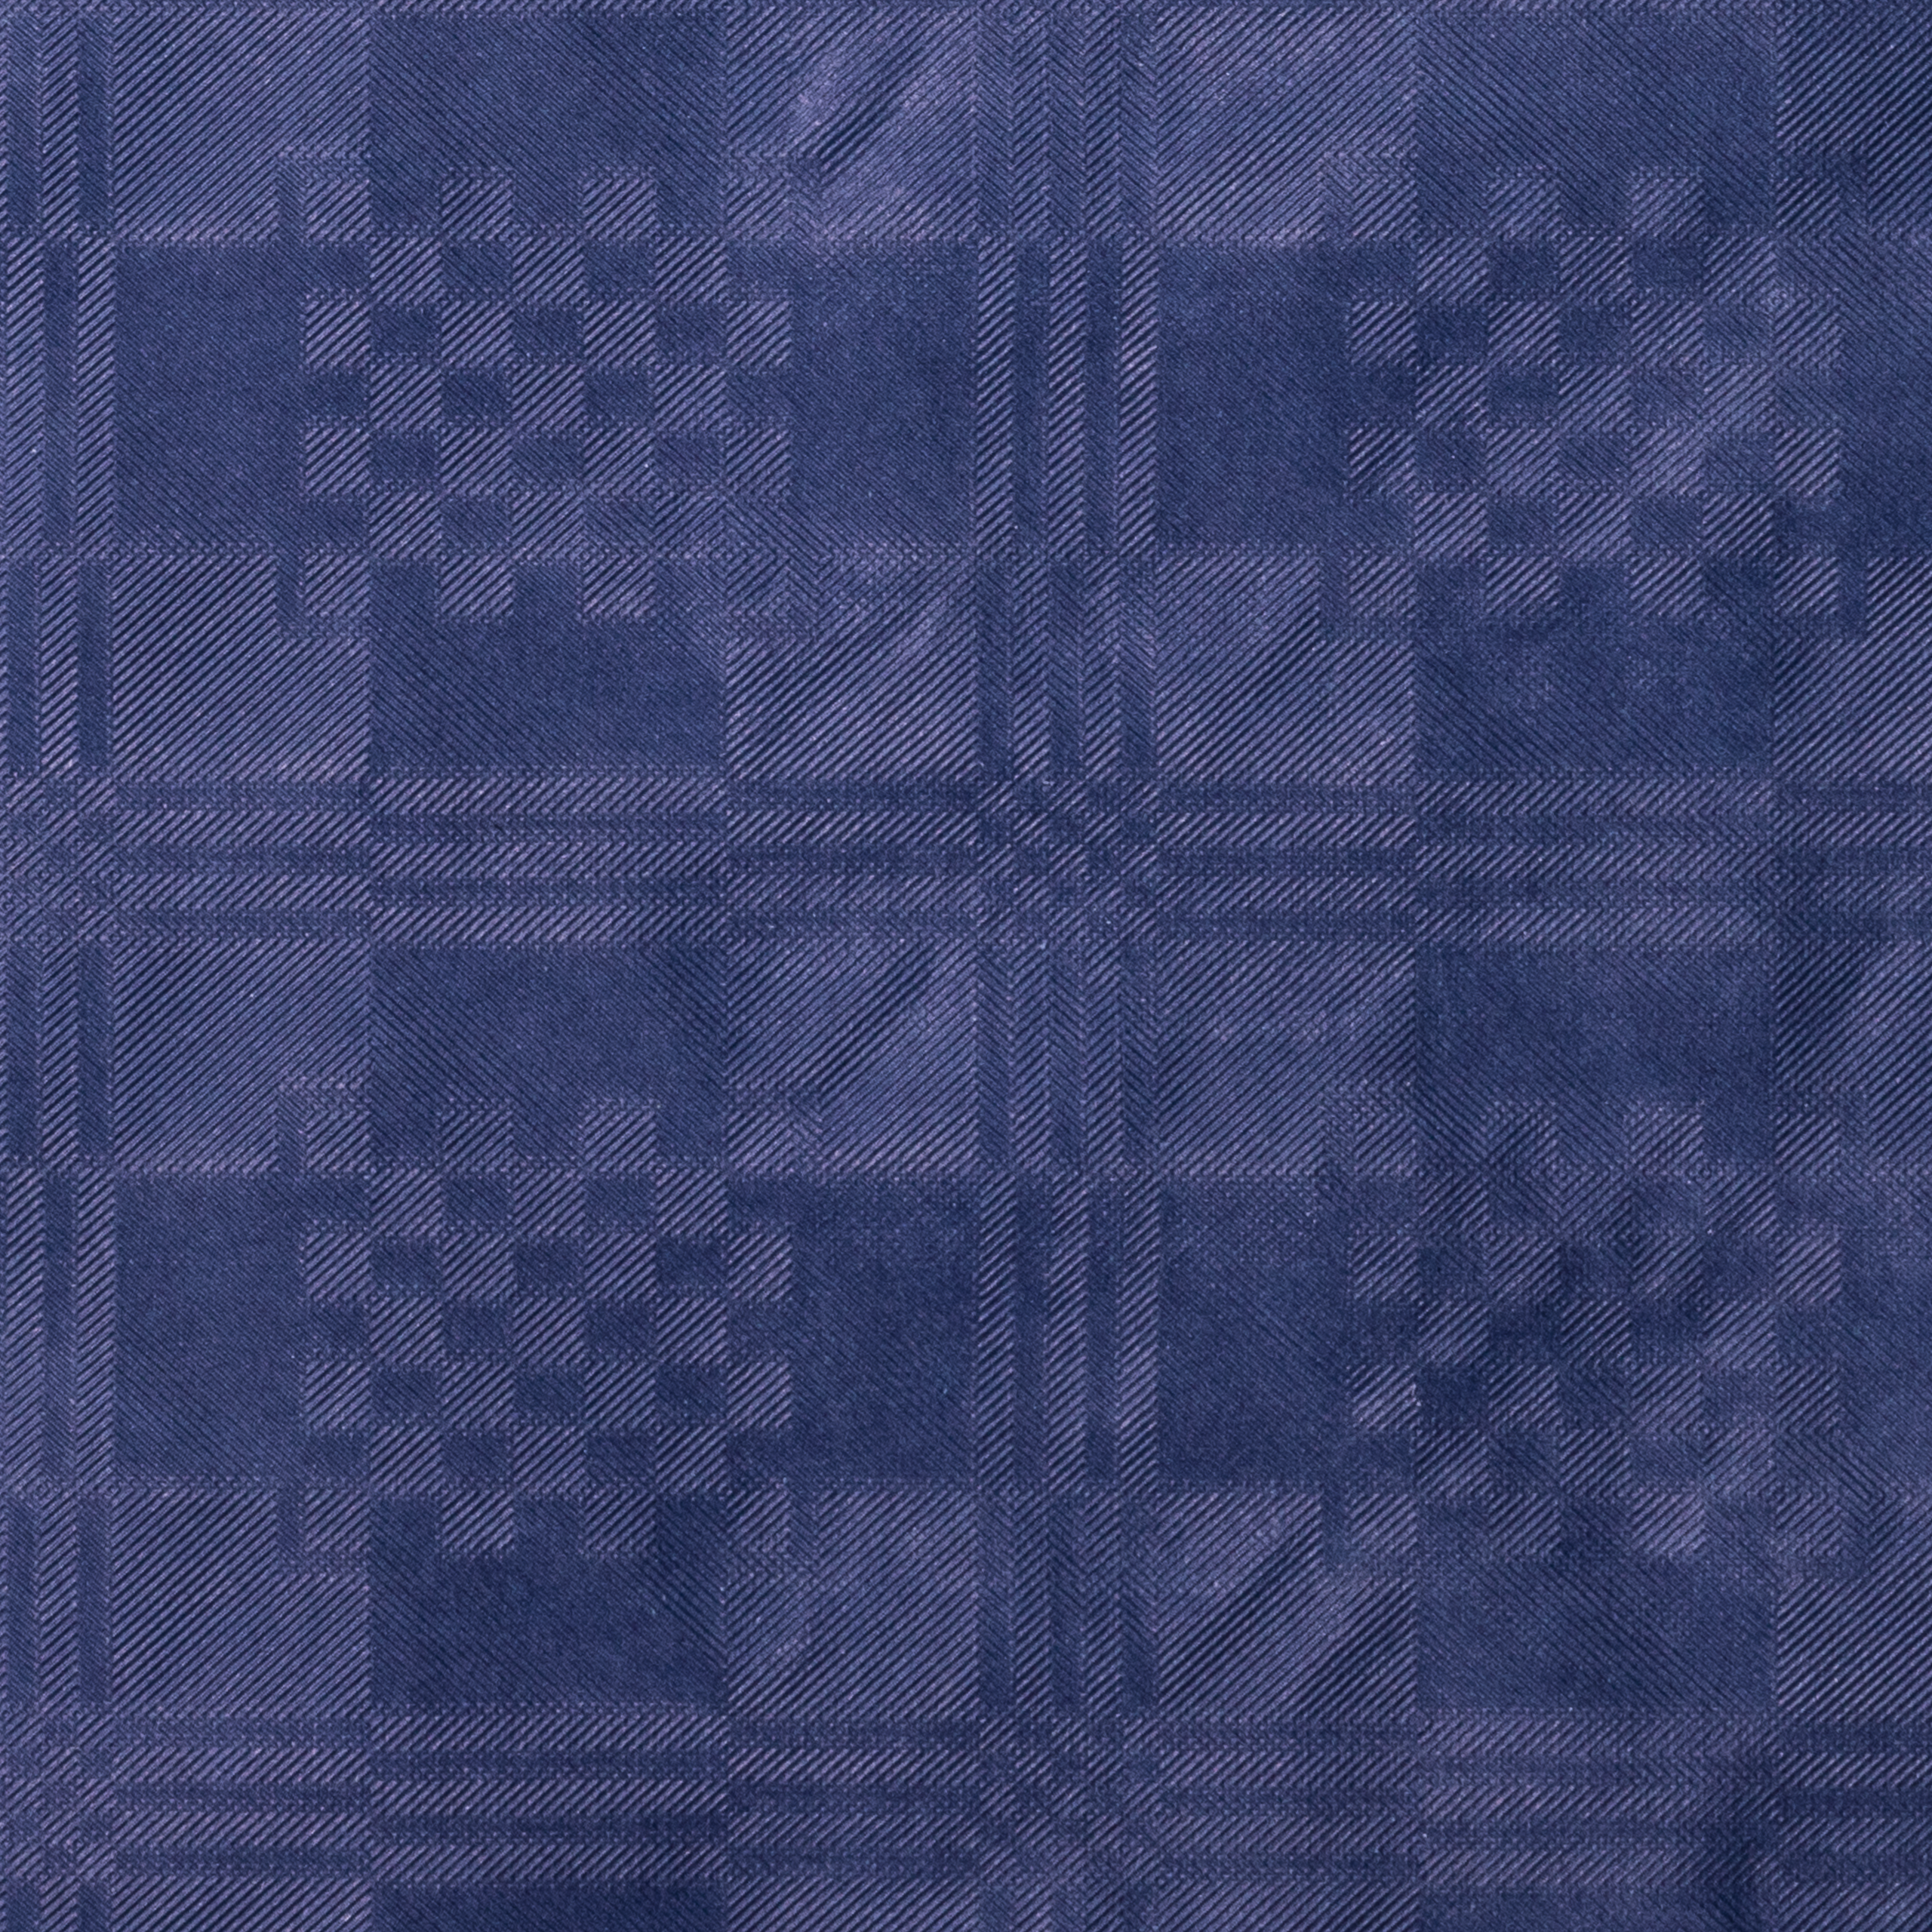 Tischtuchpapier uni dunkelblau, 1 x 10 m